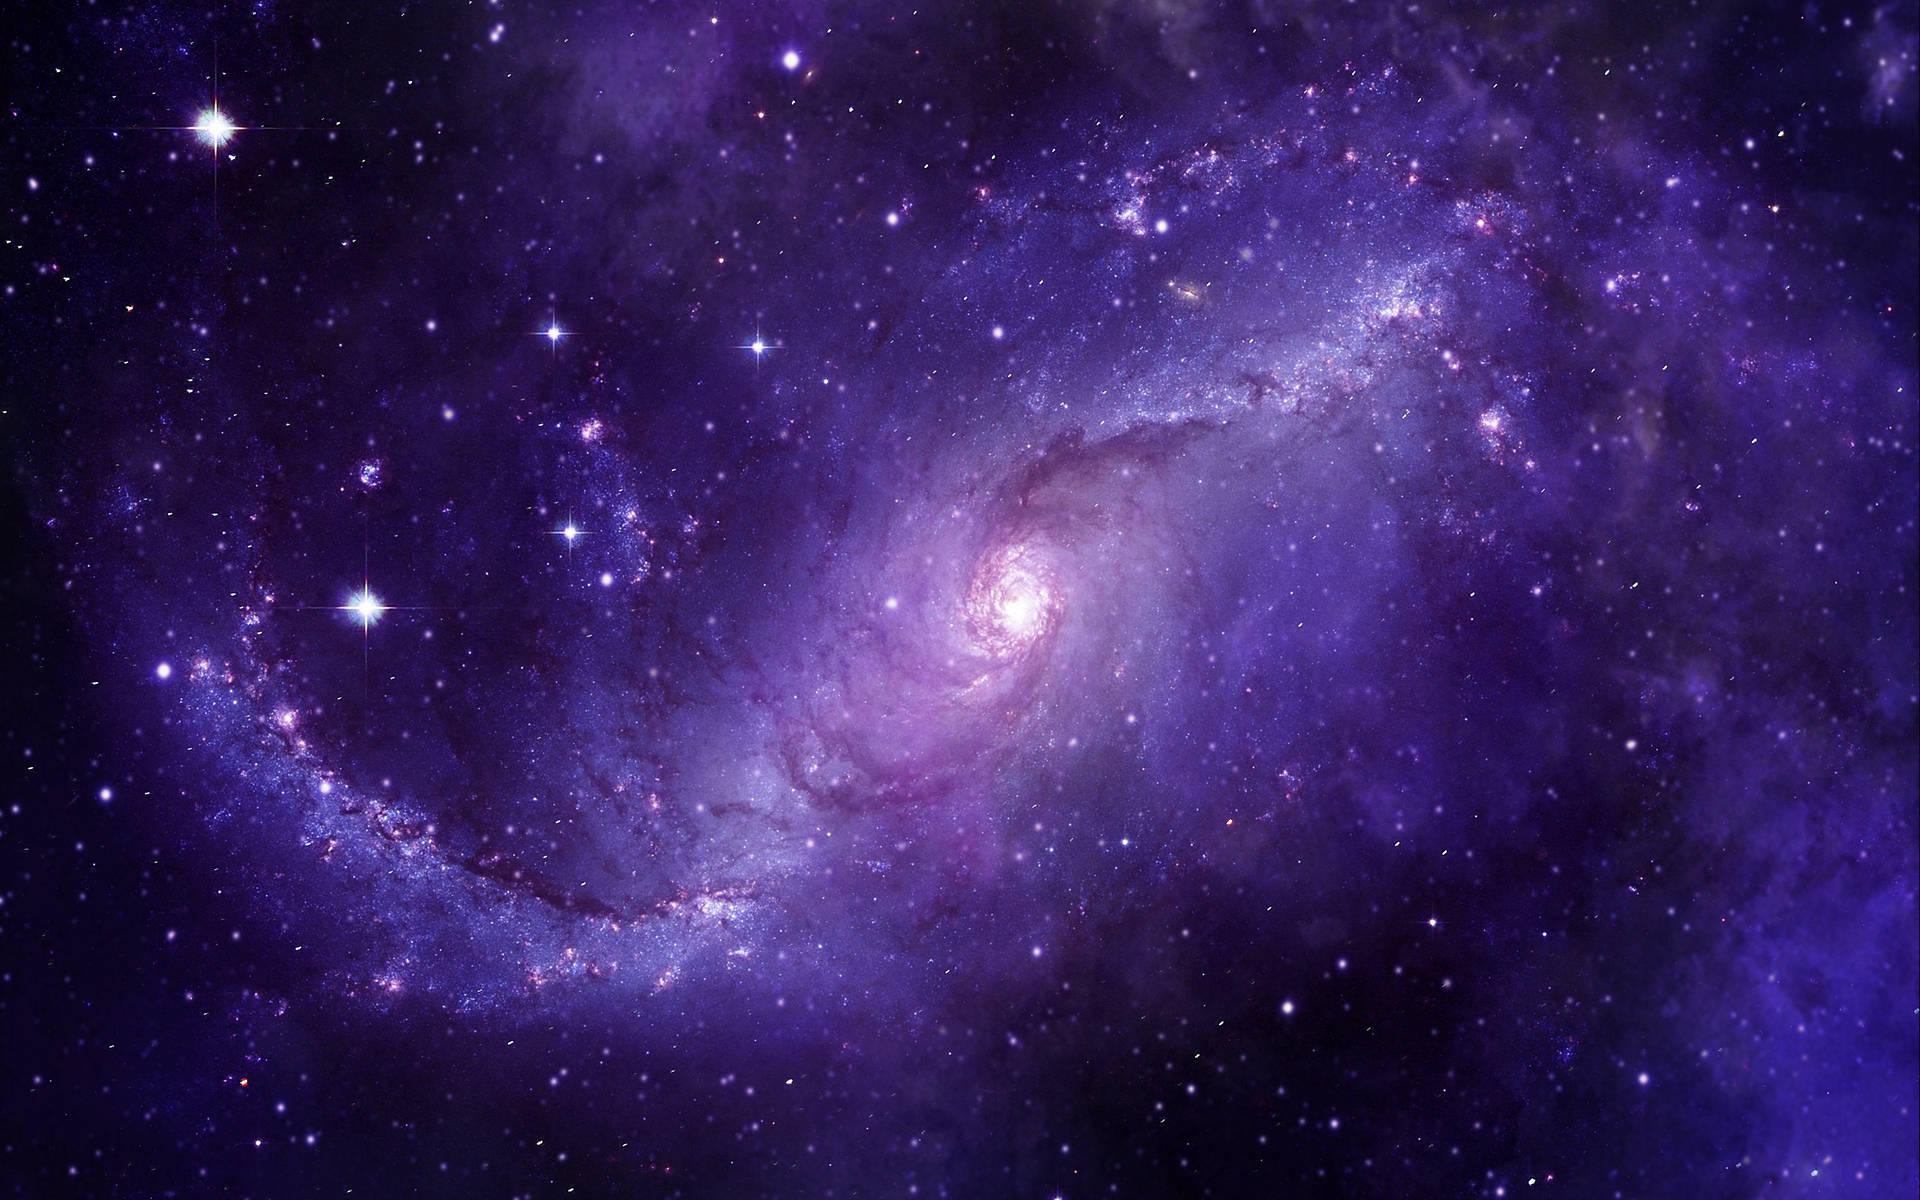 Purple Galaxy Spiral Nebula Wallpaper